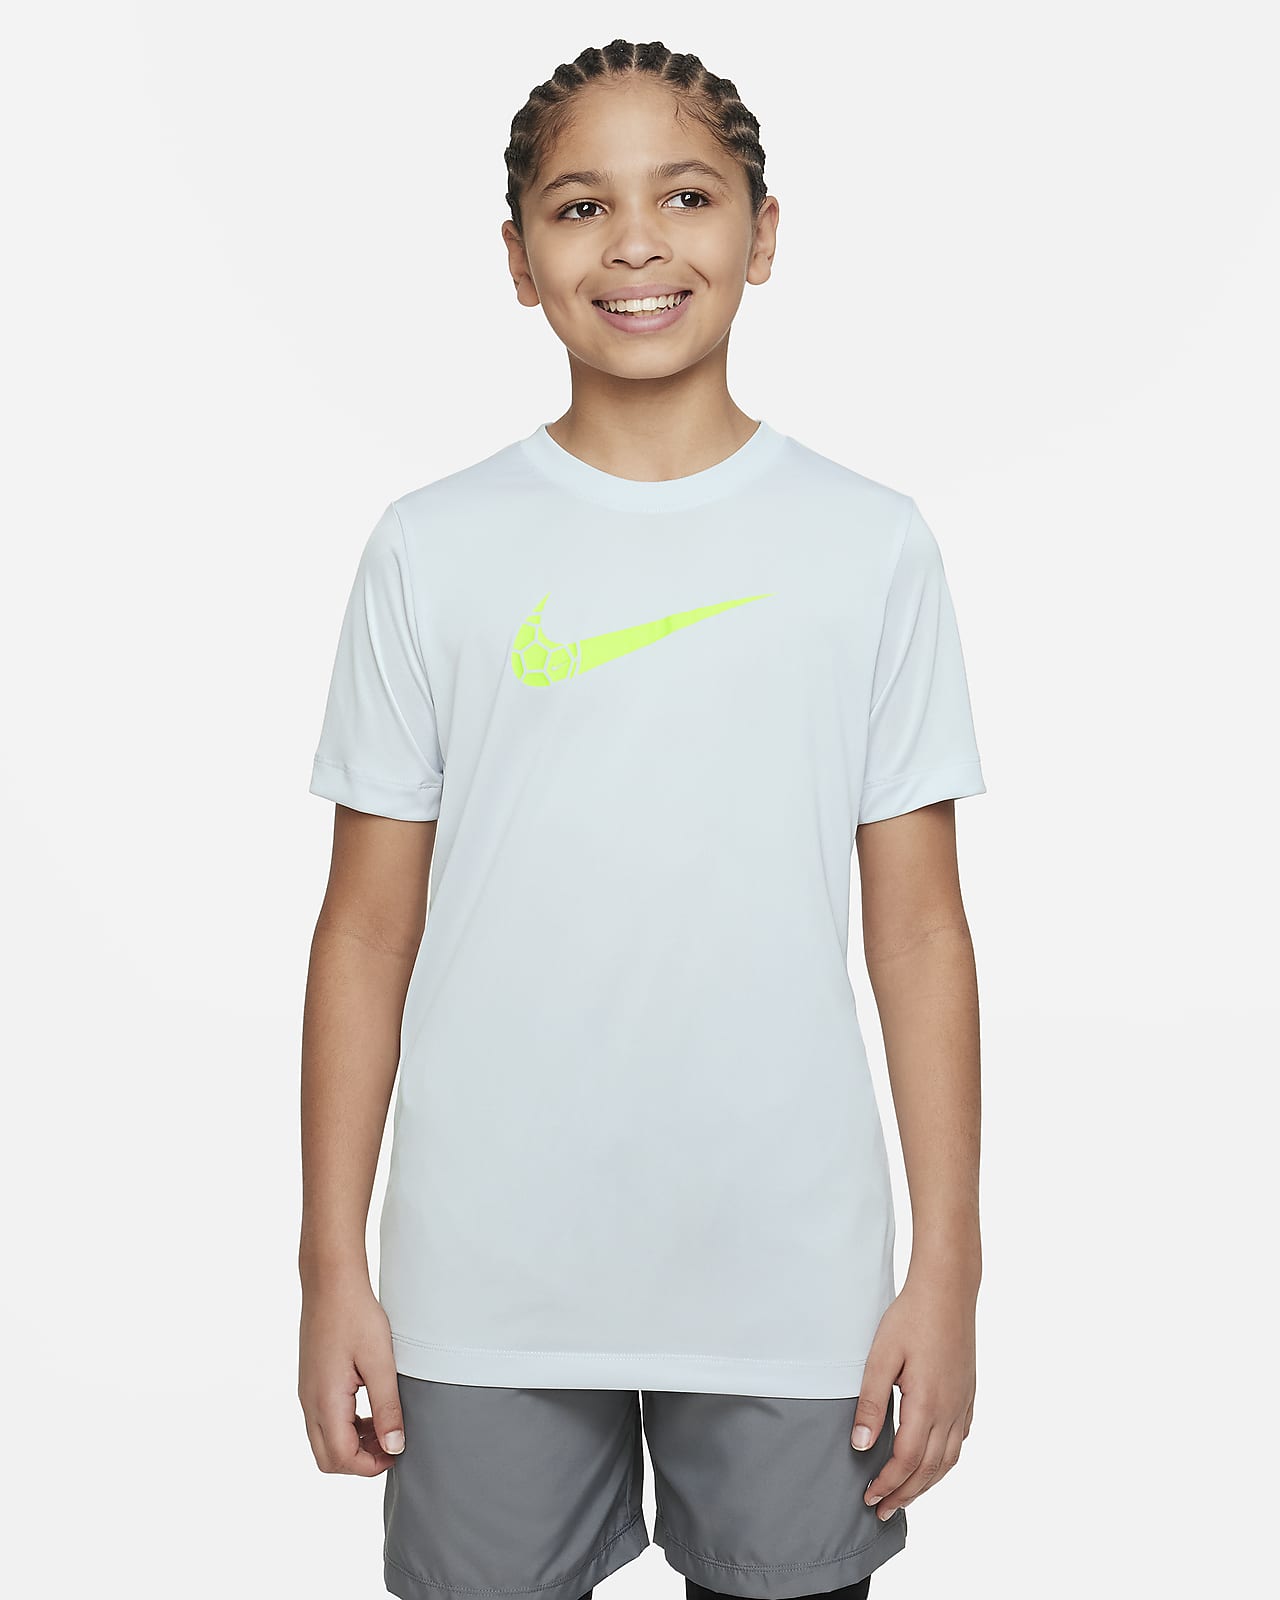 Nike Dri-FIT Big Kids' T-Shirt. Nike.com